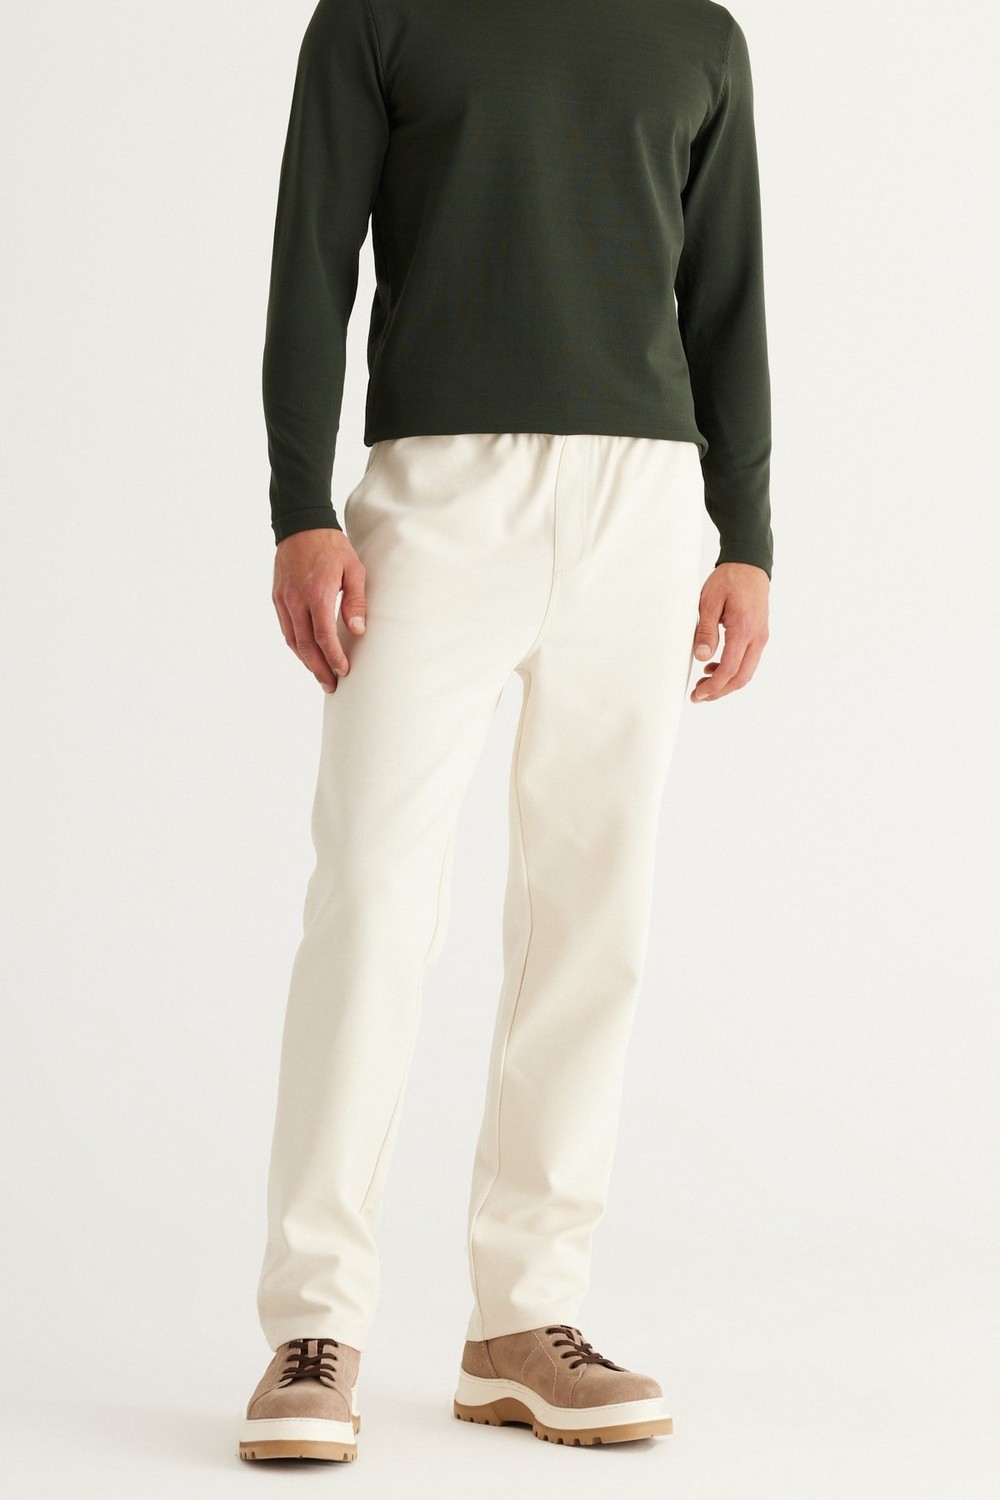 AC&Co / Altınyıldız Classics Men's Beige Standard Fit Normal Cut Cotton Cotton Jogger Pants with Tie Waist Side Pockets, Knitted Pants